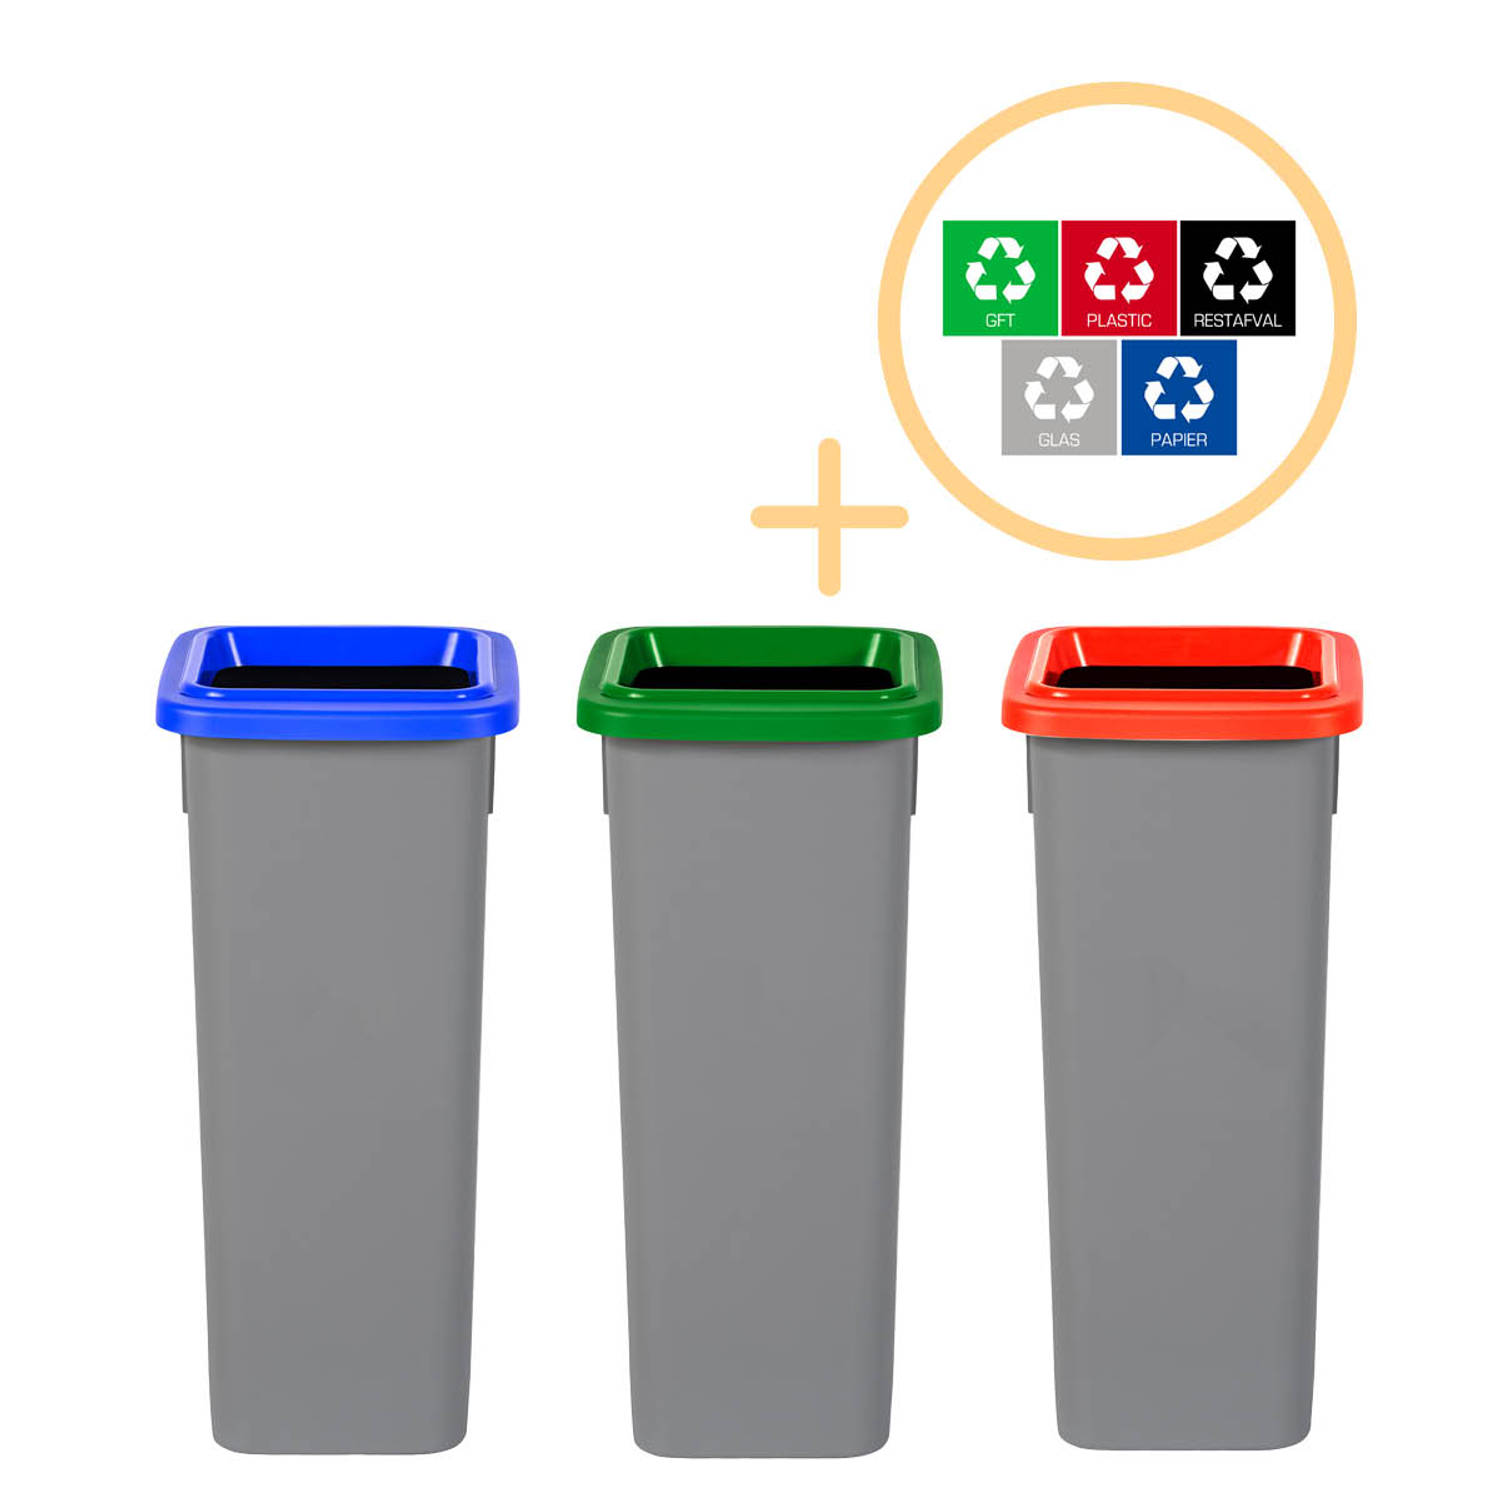 Plafor Fit Bin, Prullenbak voor afvalscheiding - 20L – Set van 3, Blauw/Groen/Rood - Inclusief 5-delige Stickerset - Afvalbak voor gemakkelijk Afval Scheiden en Recycling - Afvalem